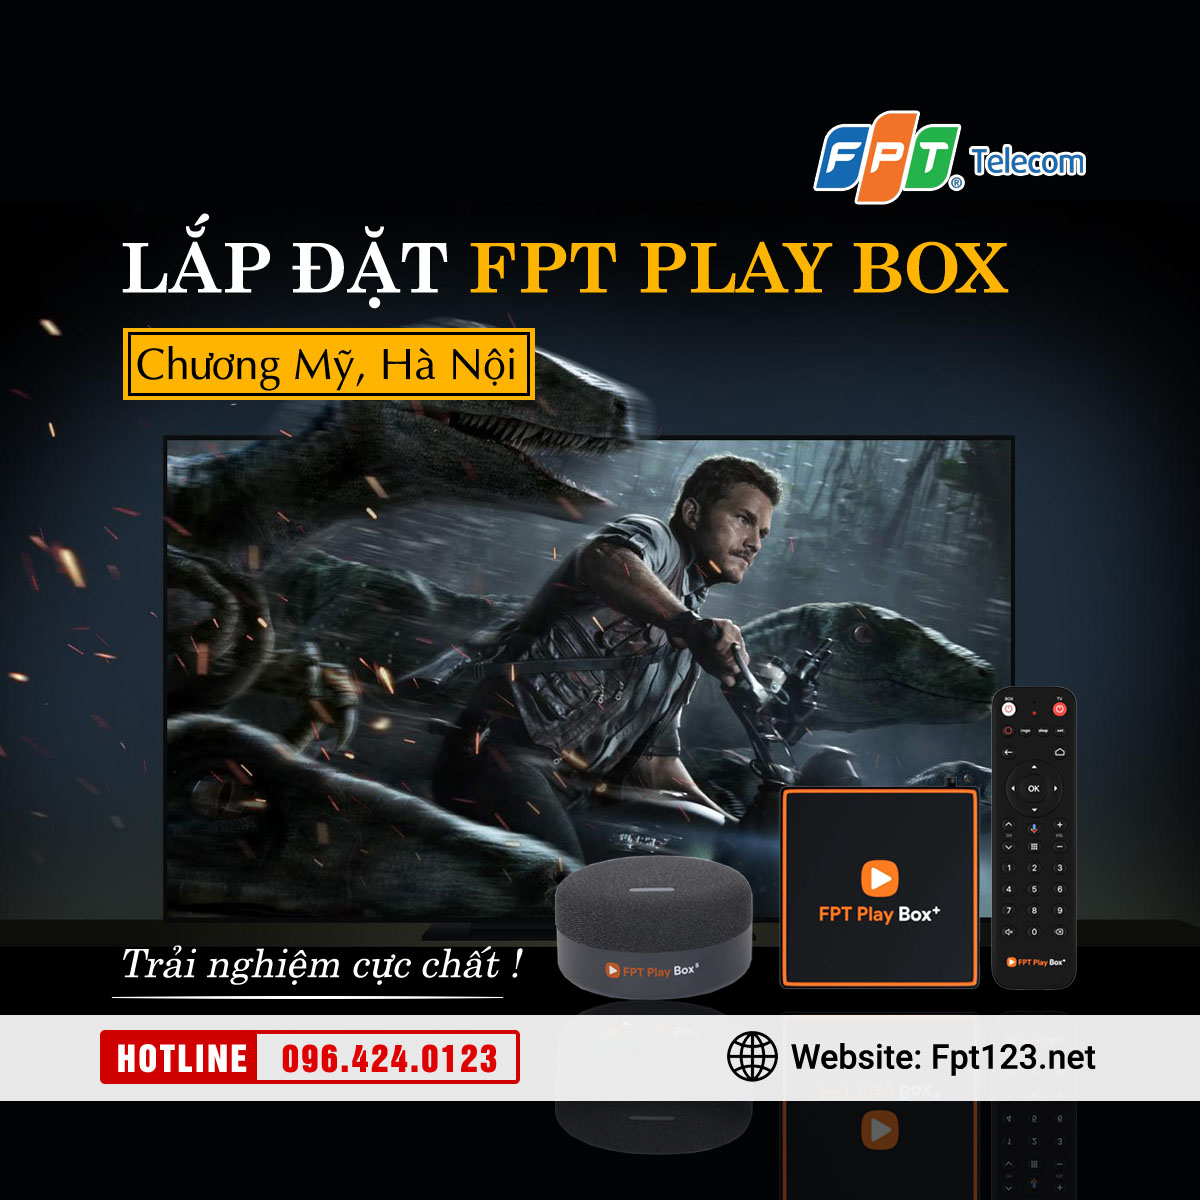 Lắp đặt FPT Play Box S, S550, T550 tại Chương Mỹ, Hà Nội